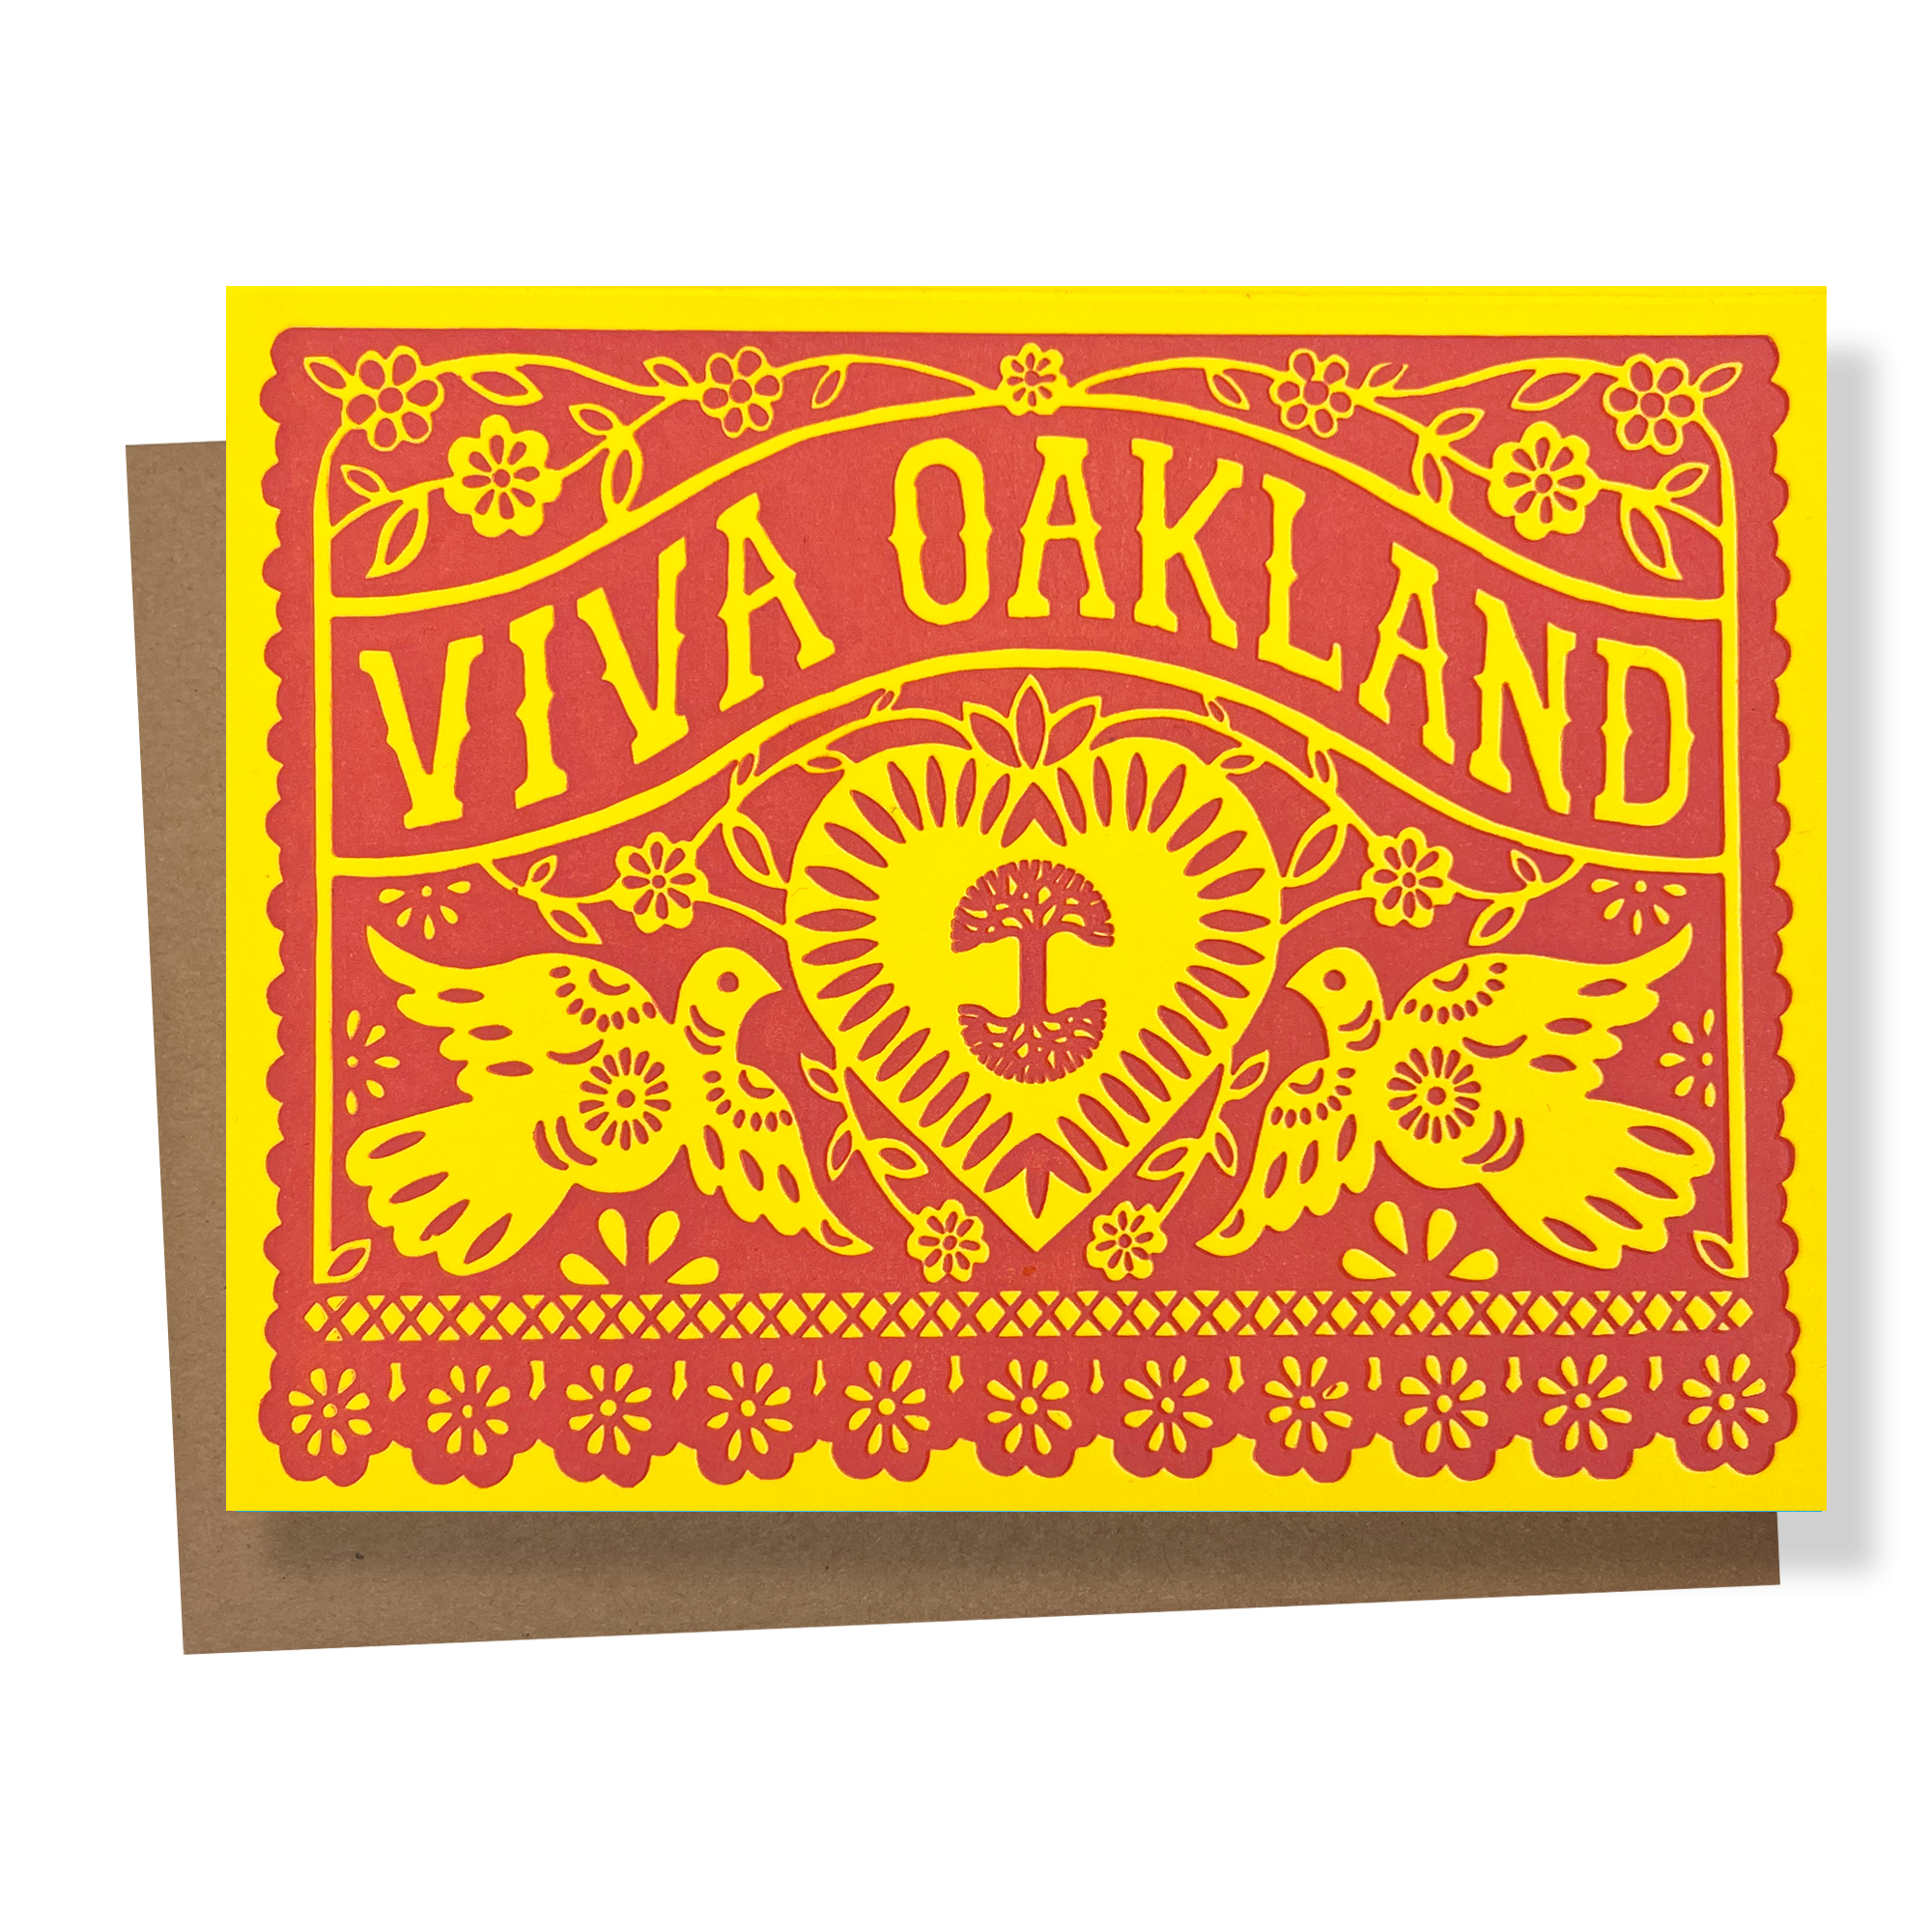 Viva Oakland Card